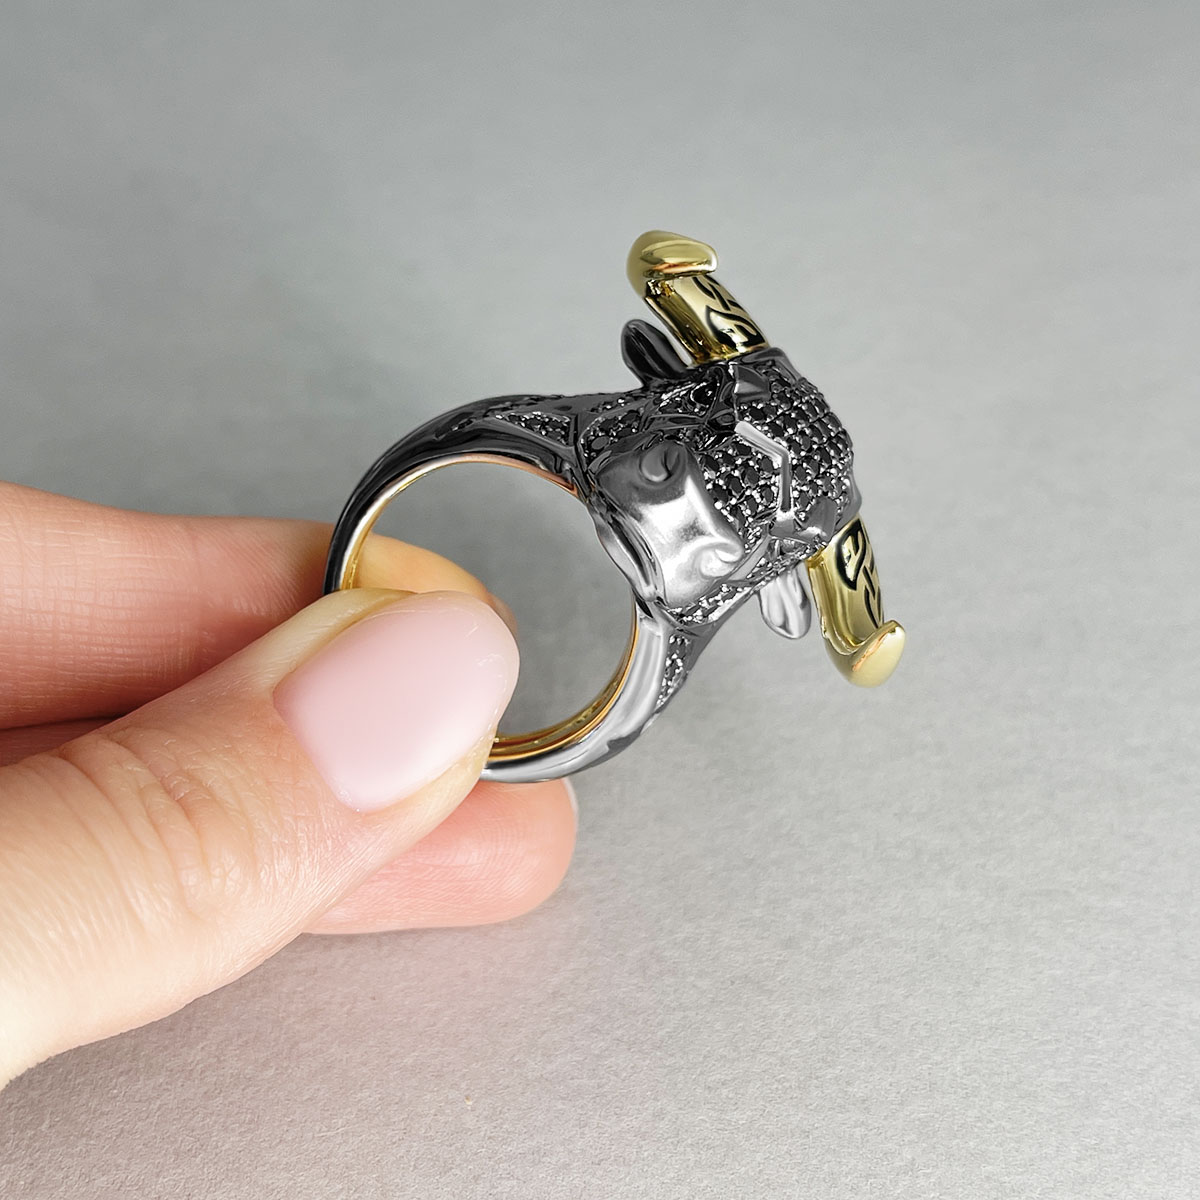 Мужское кольцо Бык с черными бриллиантами и рубинами в желтом золоте 750 пробы, фото № 4